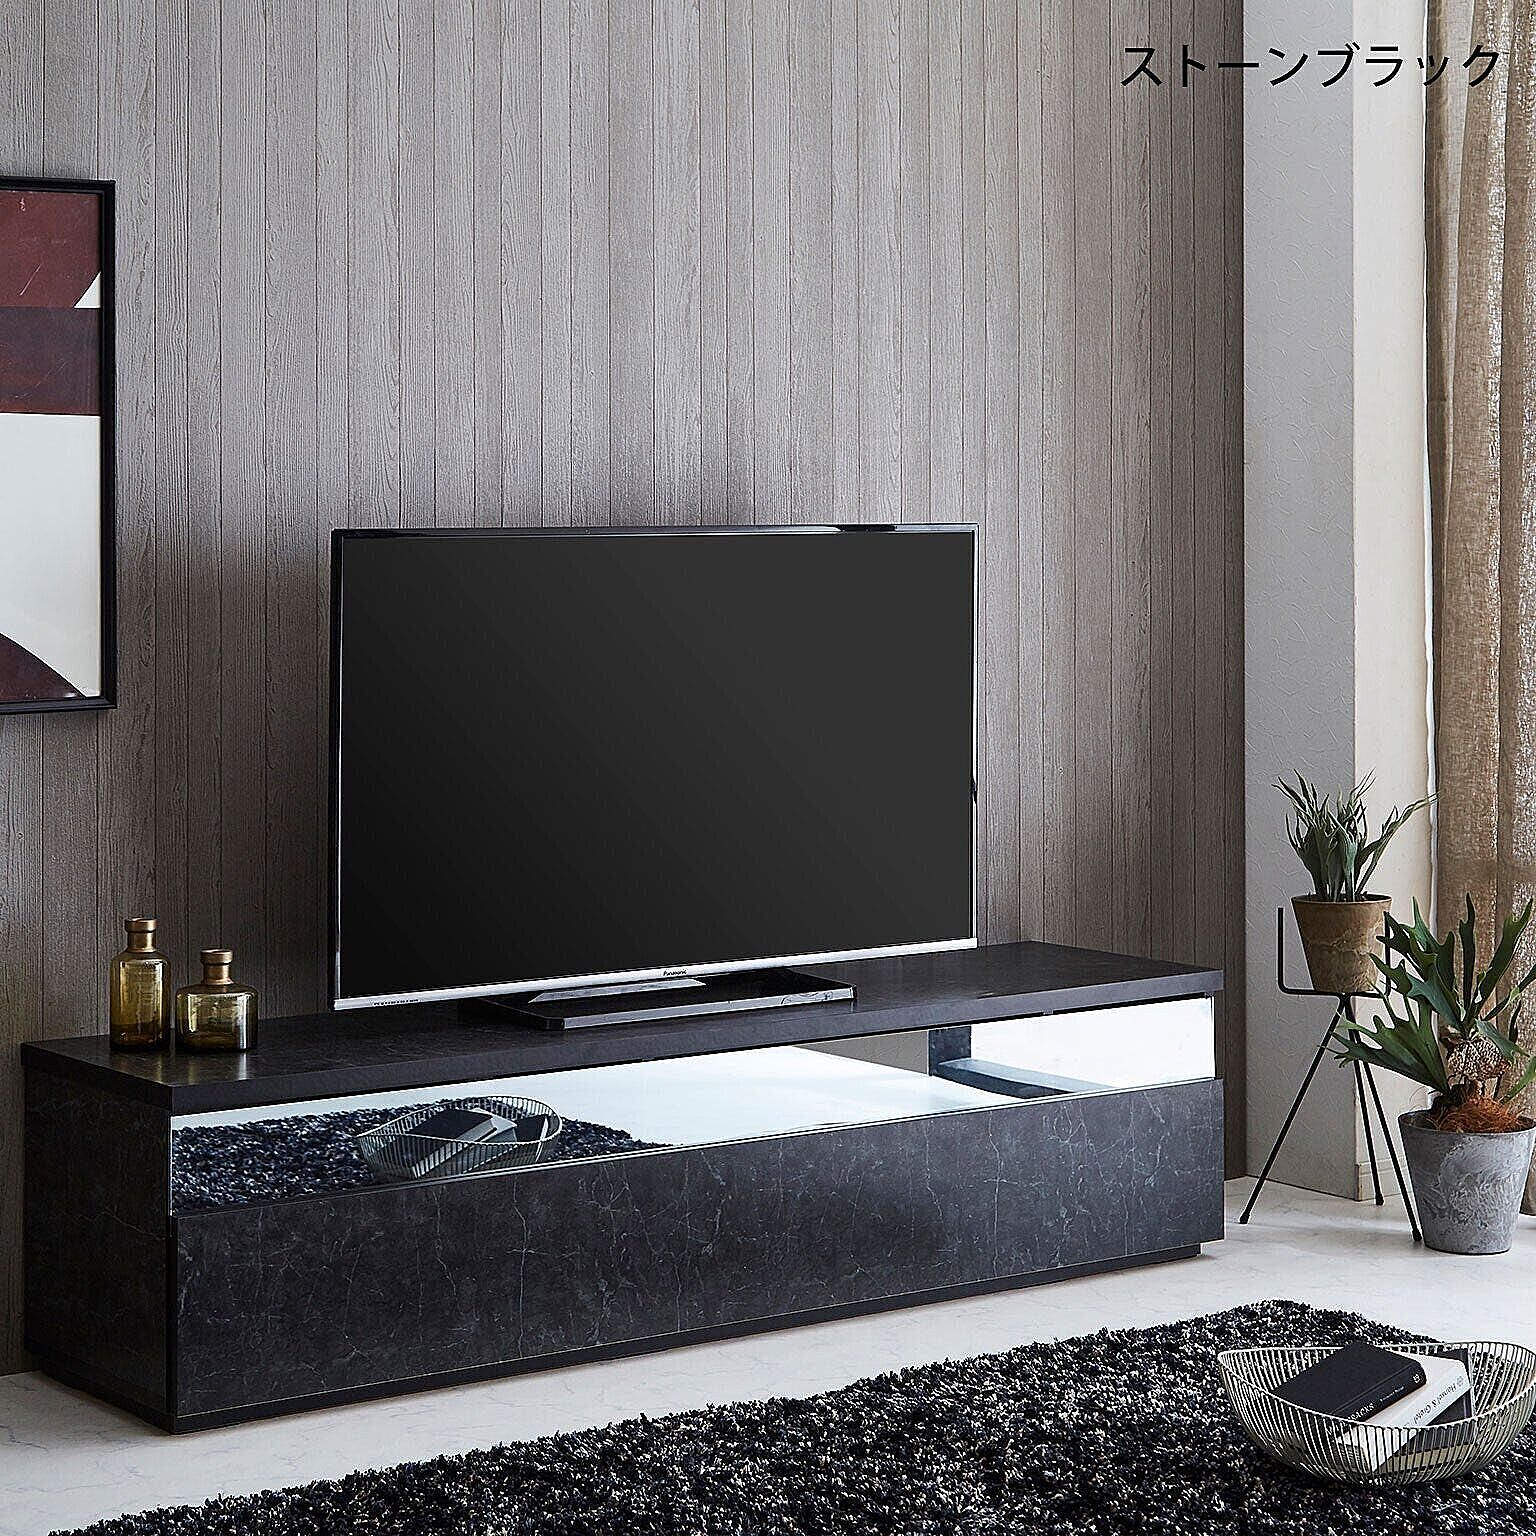 テレビ台 テレビボード AVボード TVボード ローボード リビングボード フレッド 幅180cm 完成品 日本製